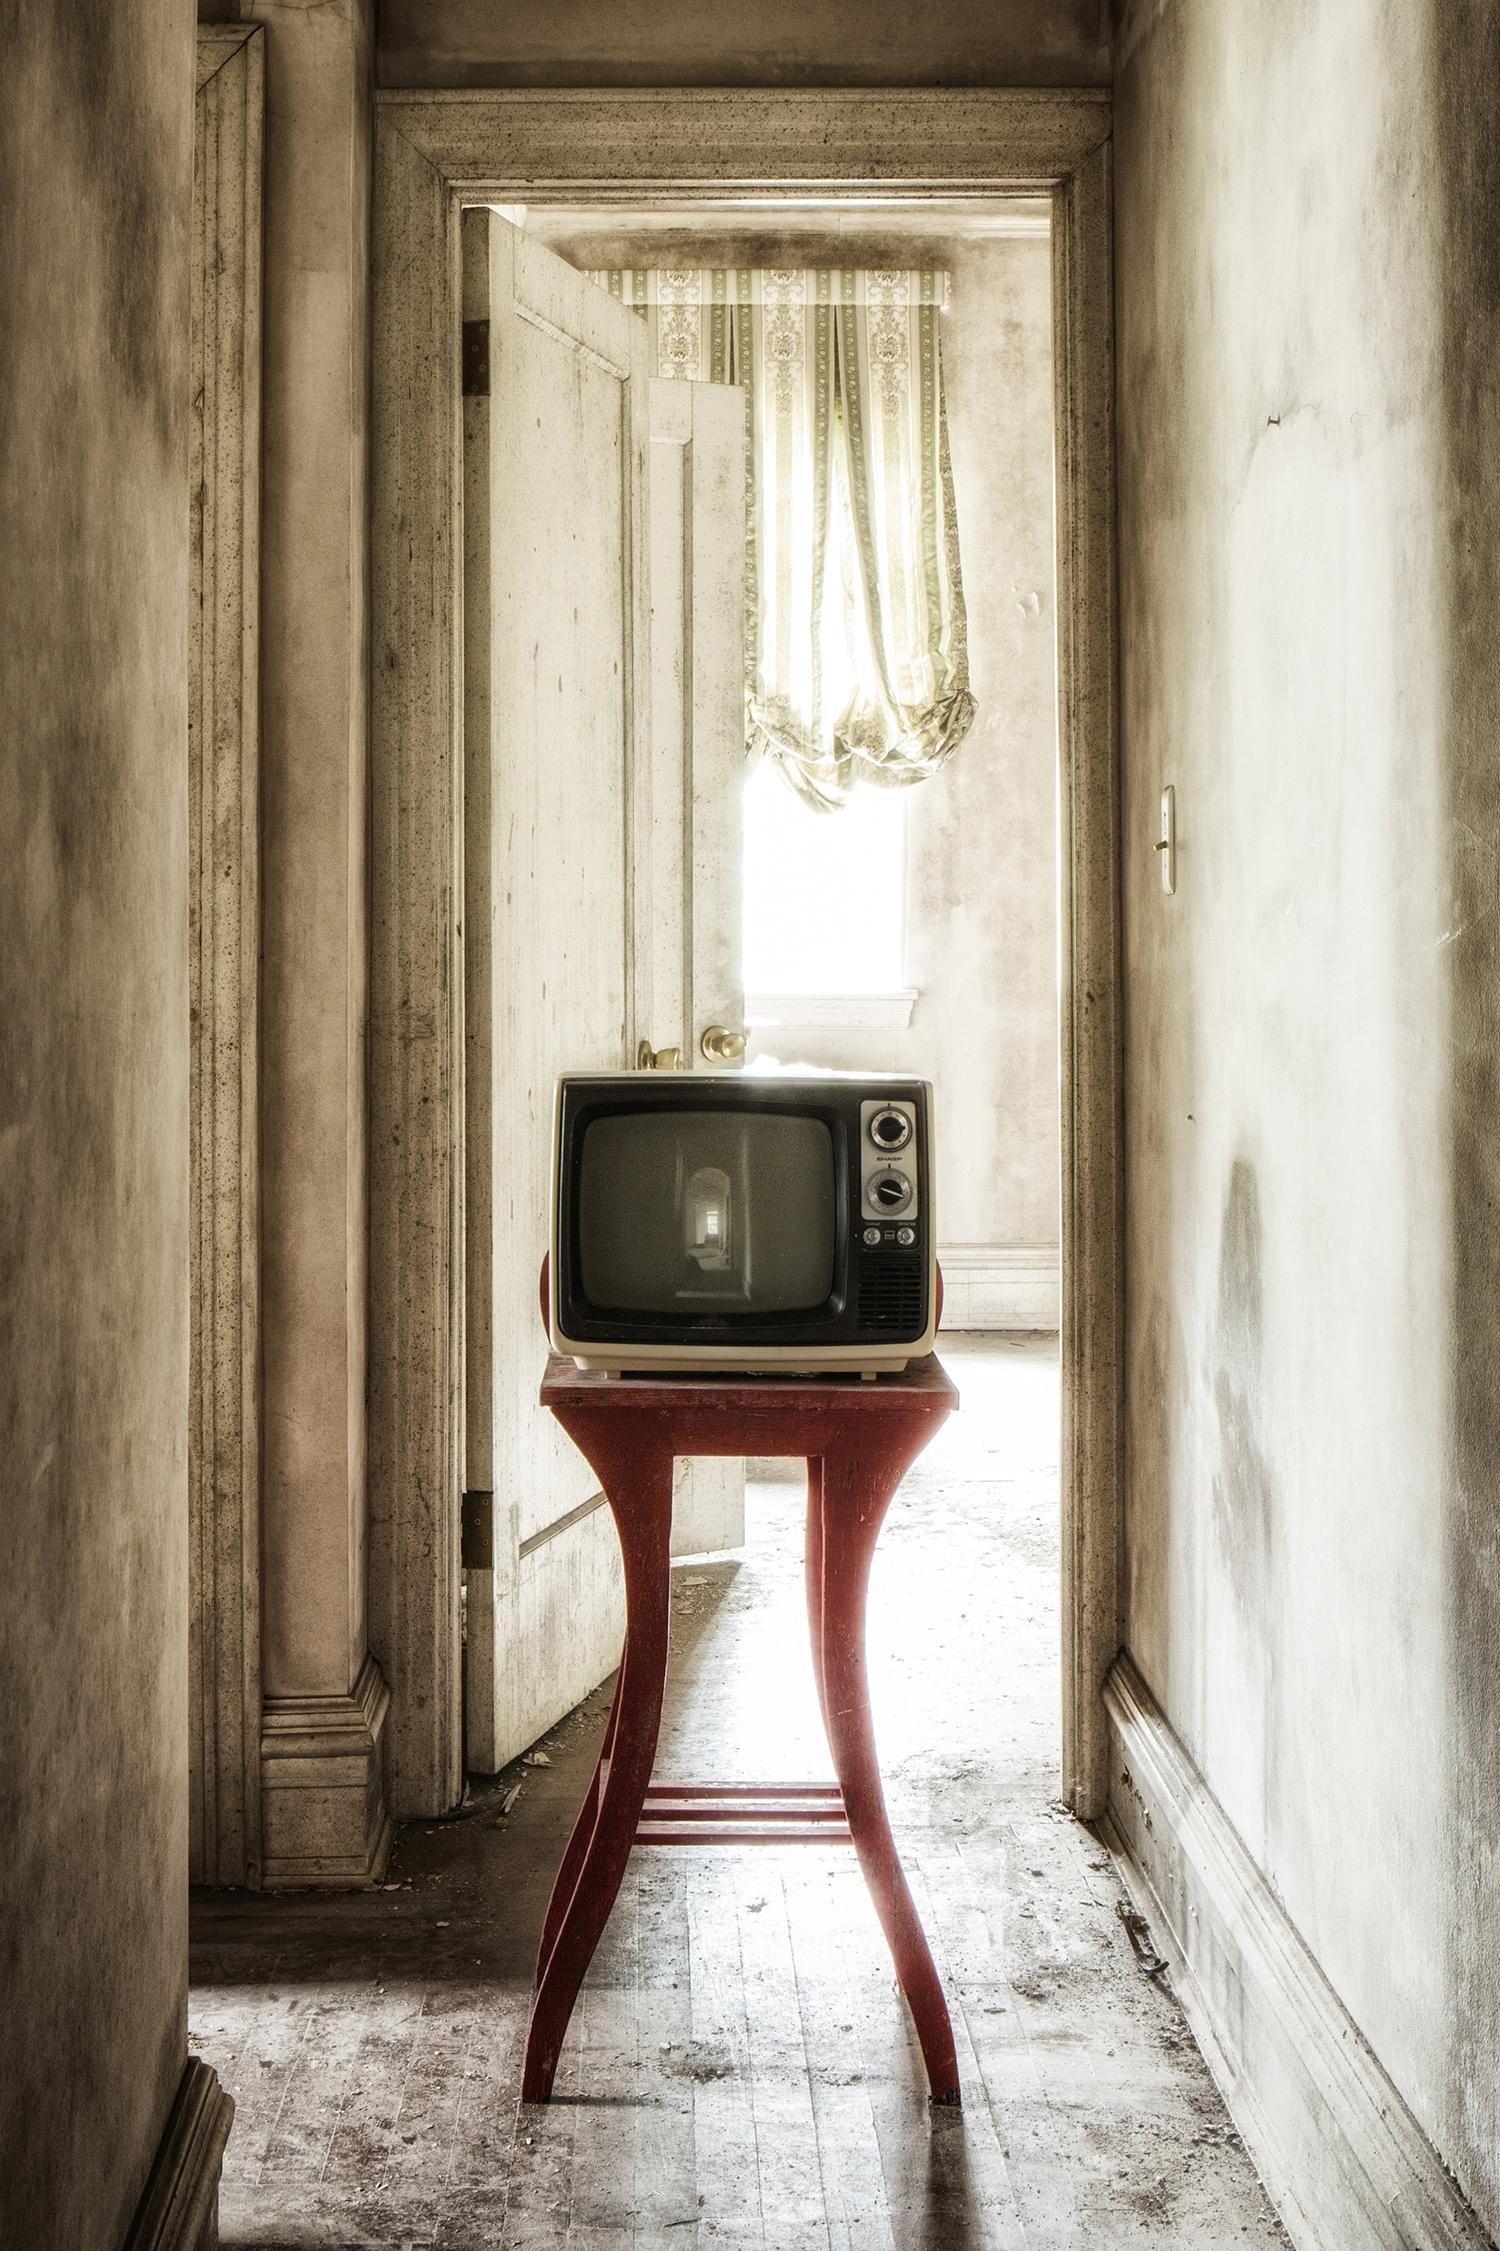 « Showtime #2 », abandonné, télévision, couloir, beige, rouge, photographie couleur - Photograph de Rebecca Skinner